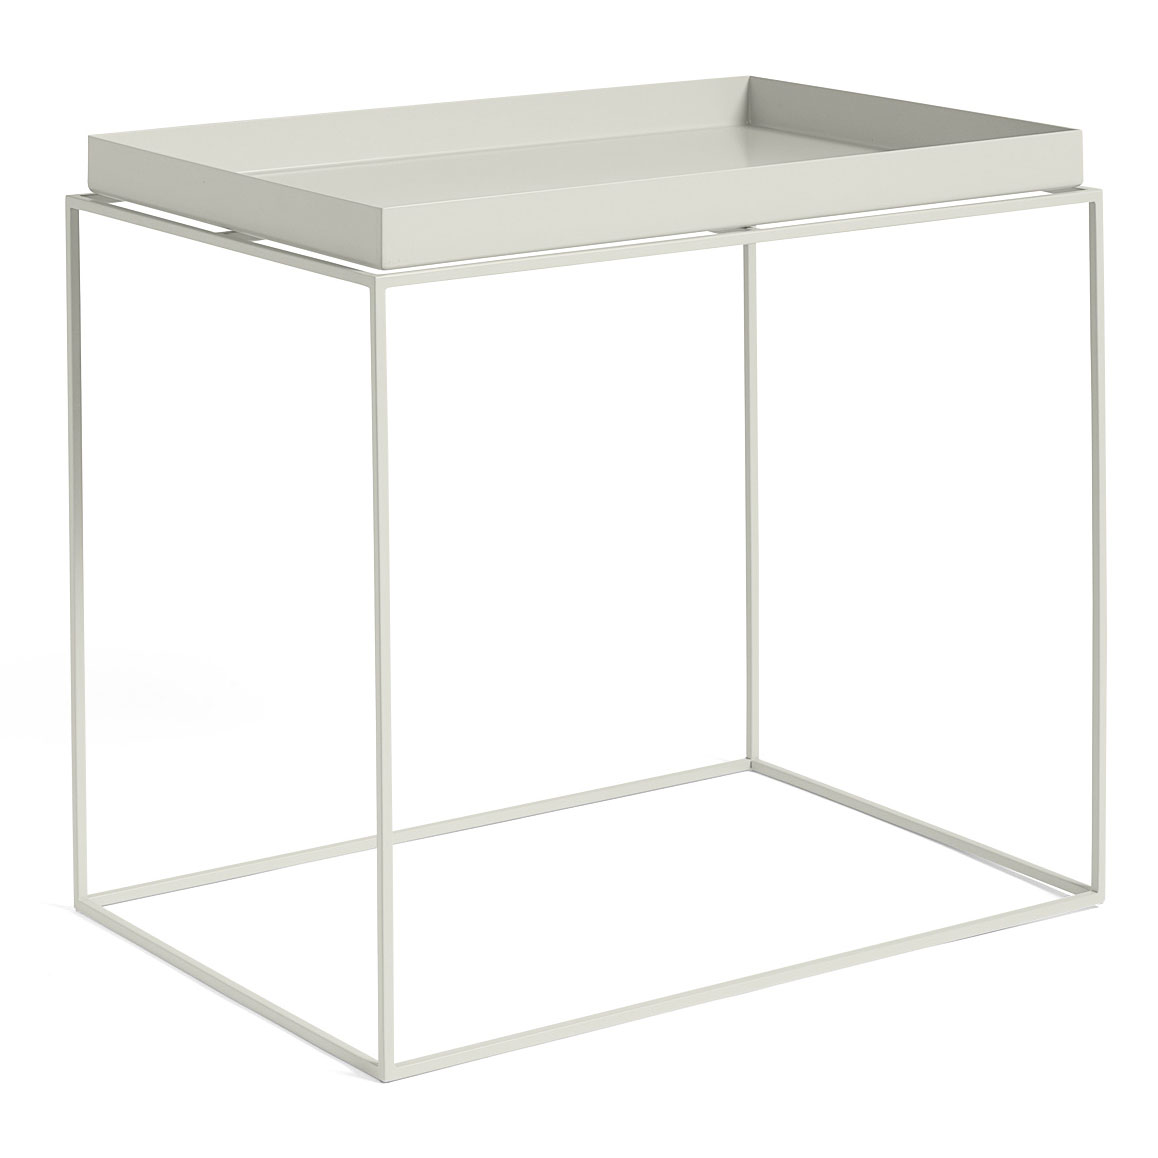 Tarjoilupöytä 40x60 cm, Warm Grey